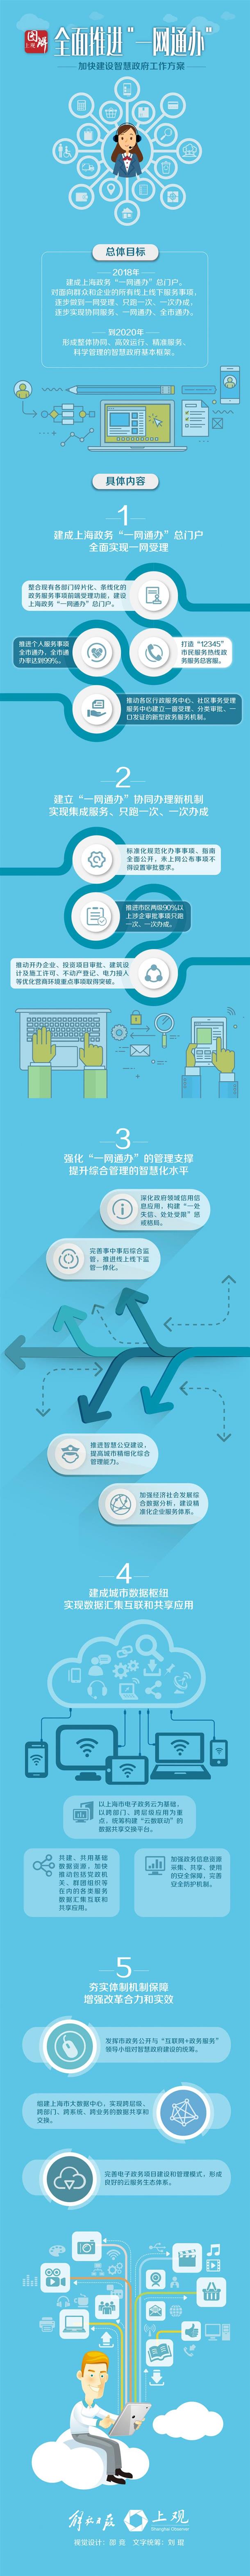 一图读懂 上海全力打响“一网通办”政务服务品牌